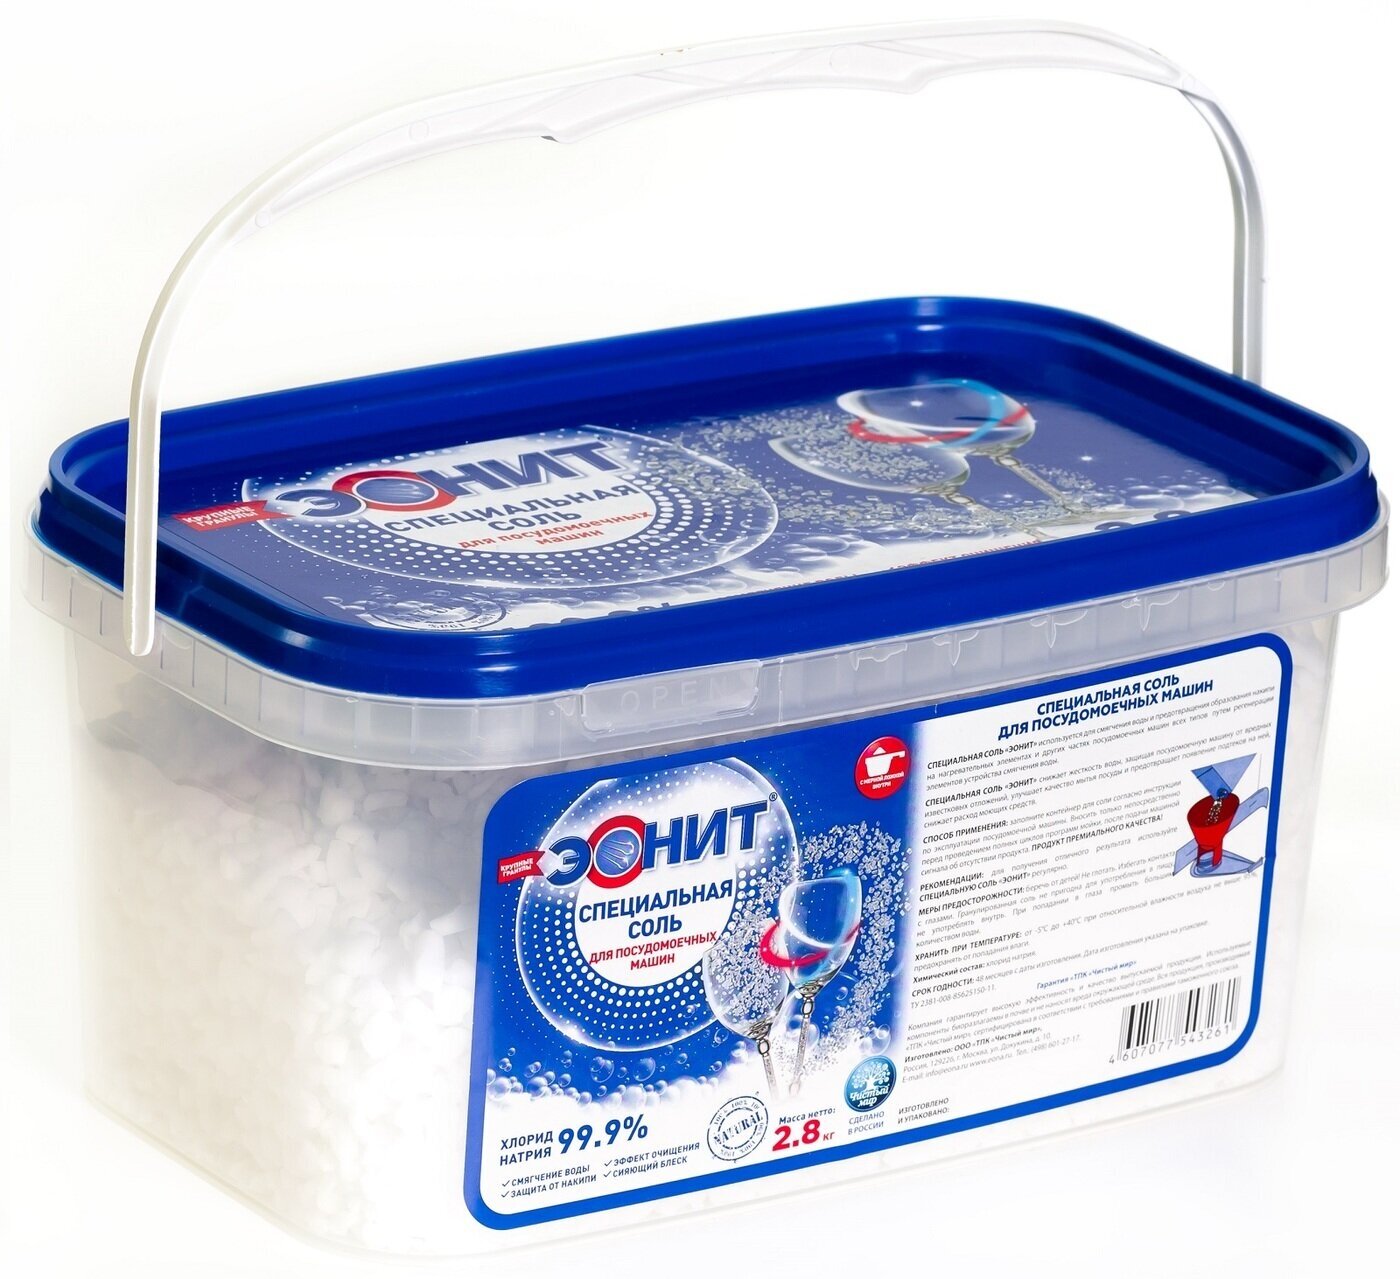 Соль для посудомоечных машин "эонит" 2.8 кг.